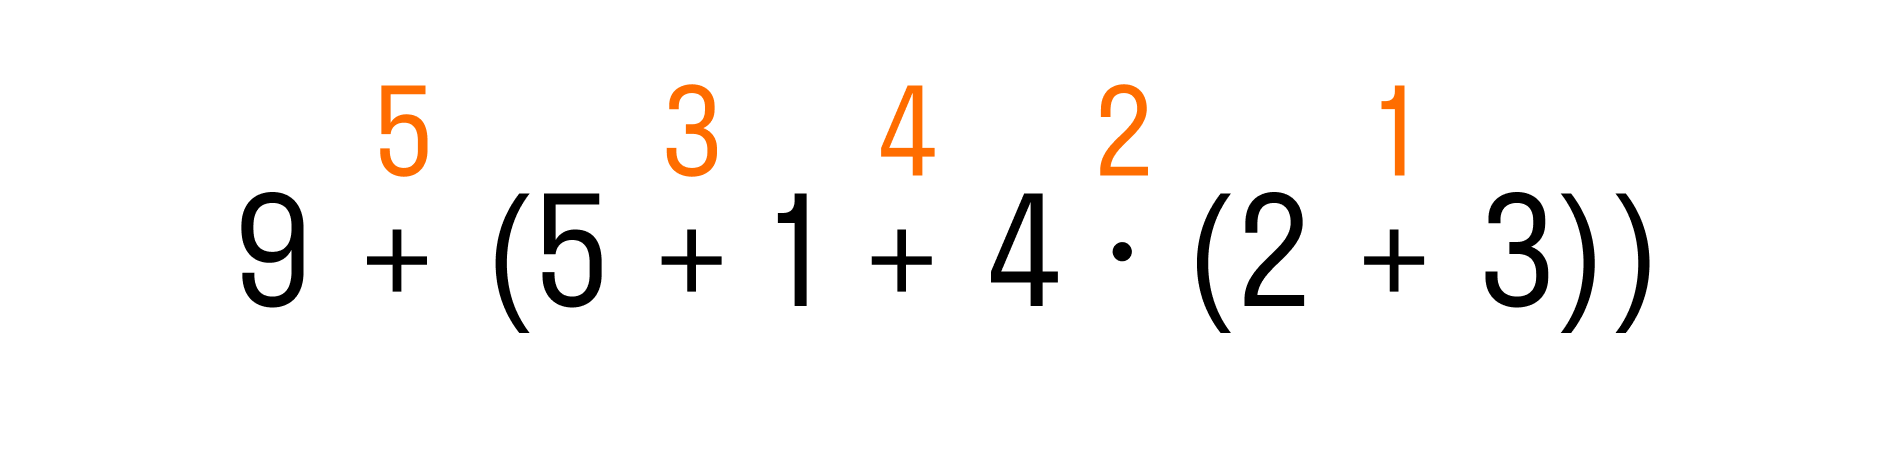 Порядок действий в математике, пример 2, шаг 3